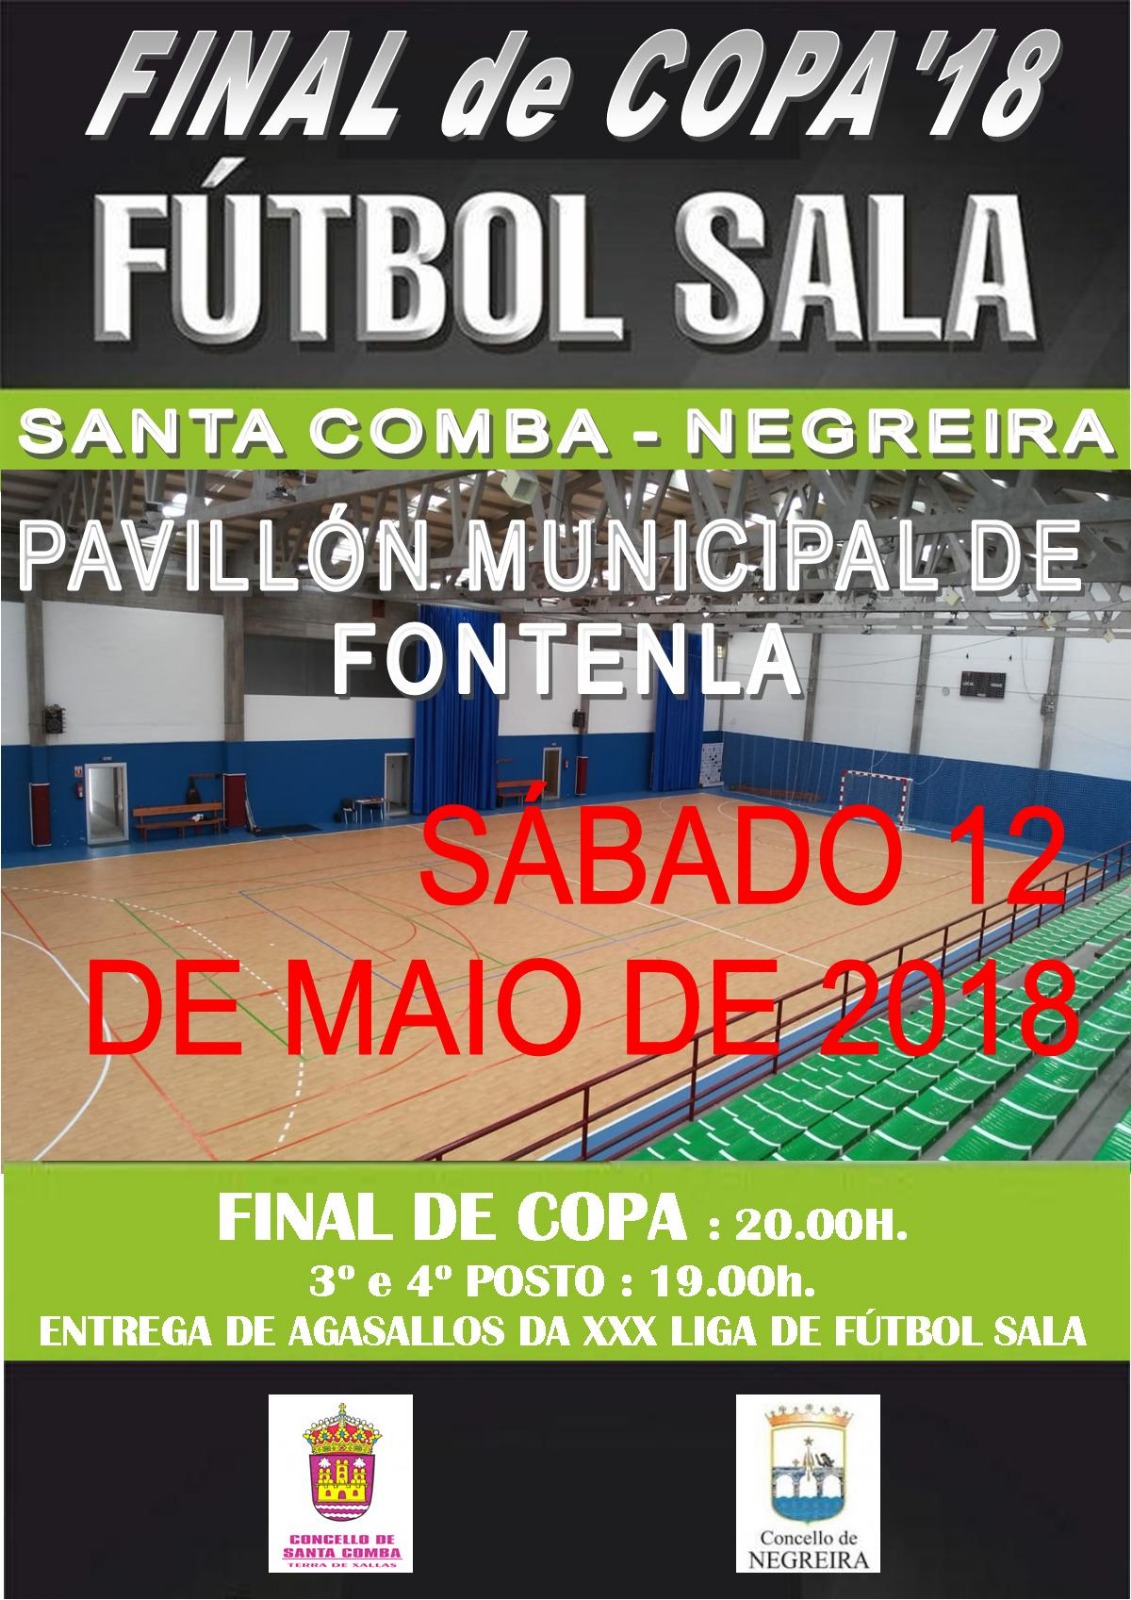 Final de Copa 2018 Futbol Sala Santa Comba-Negreira